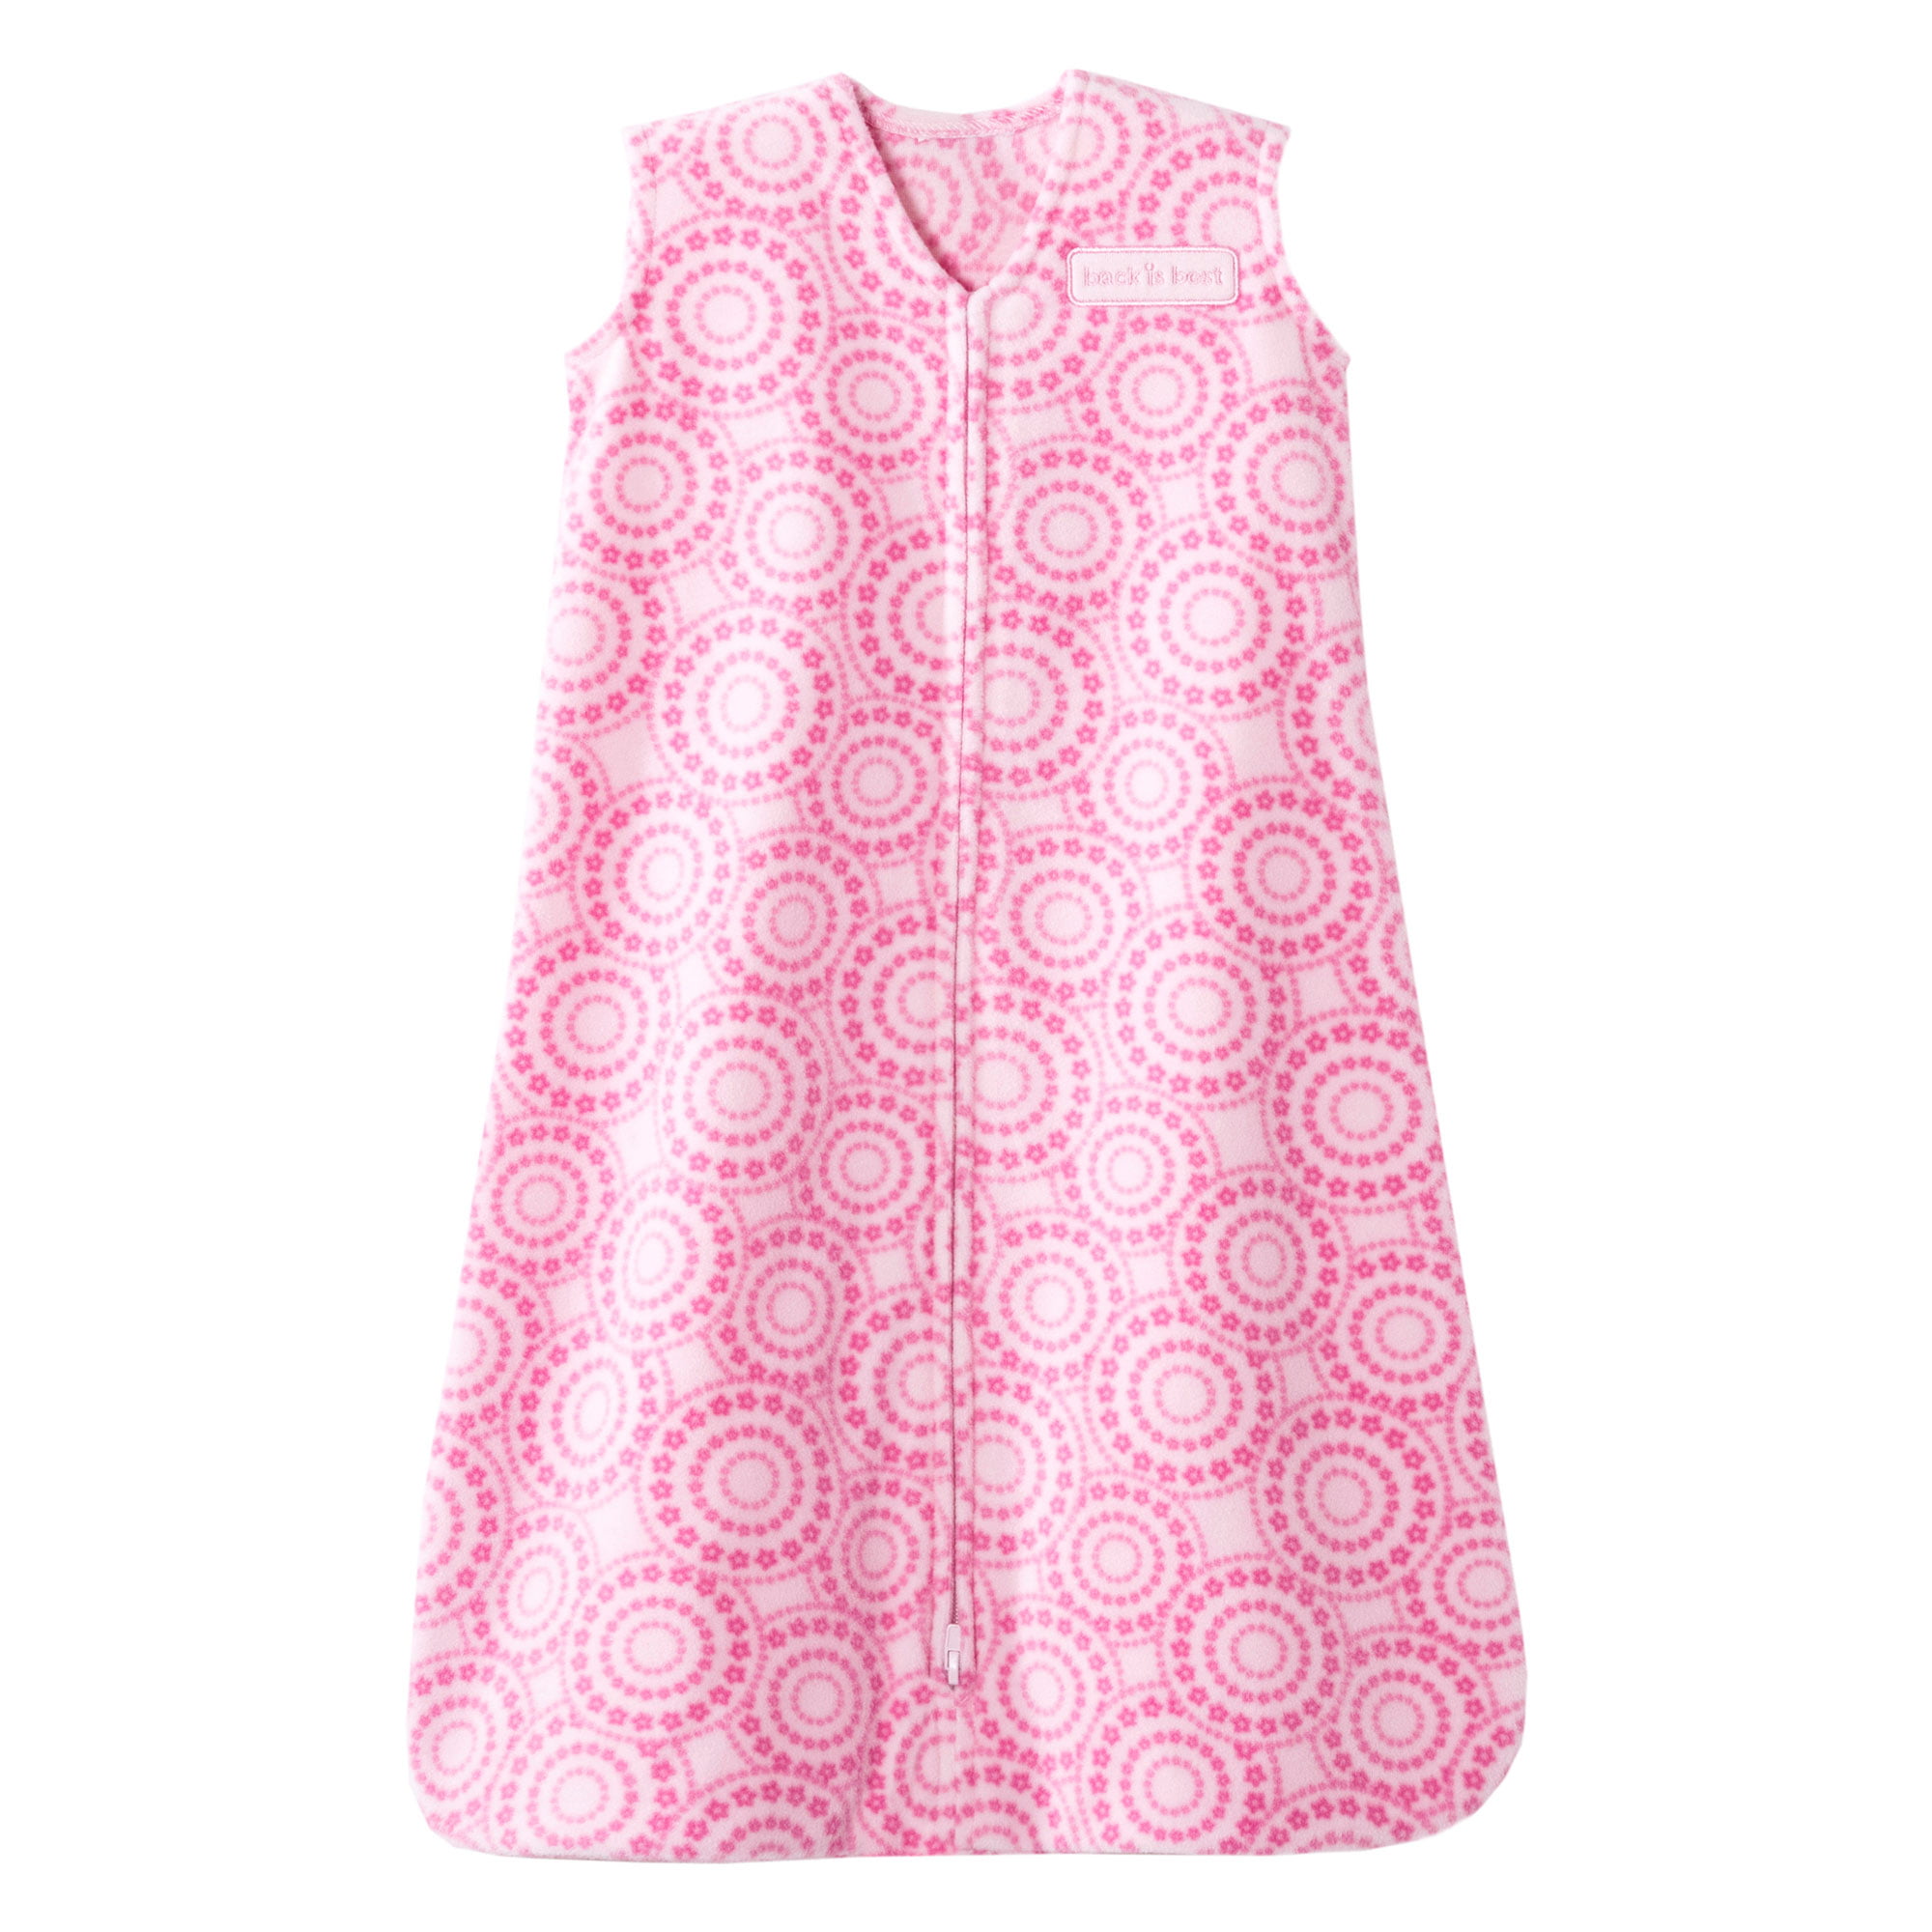 Pink Floral Medallions Halo Micro Fleece SleepSack Swaddle Wearable Blanket 